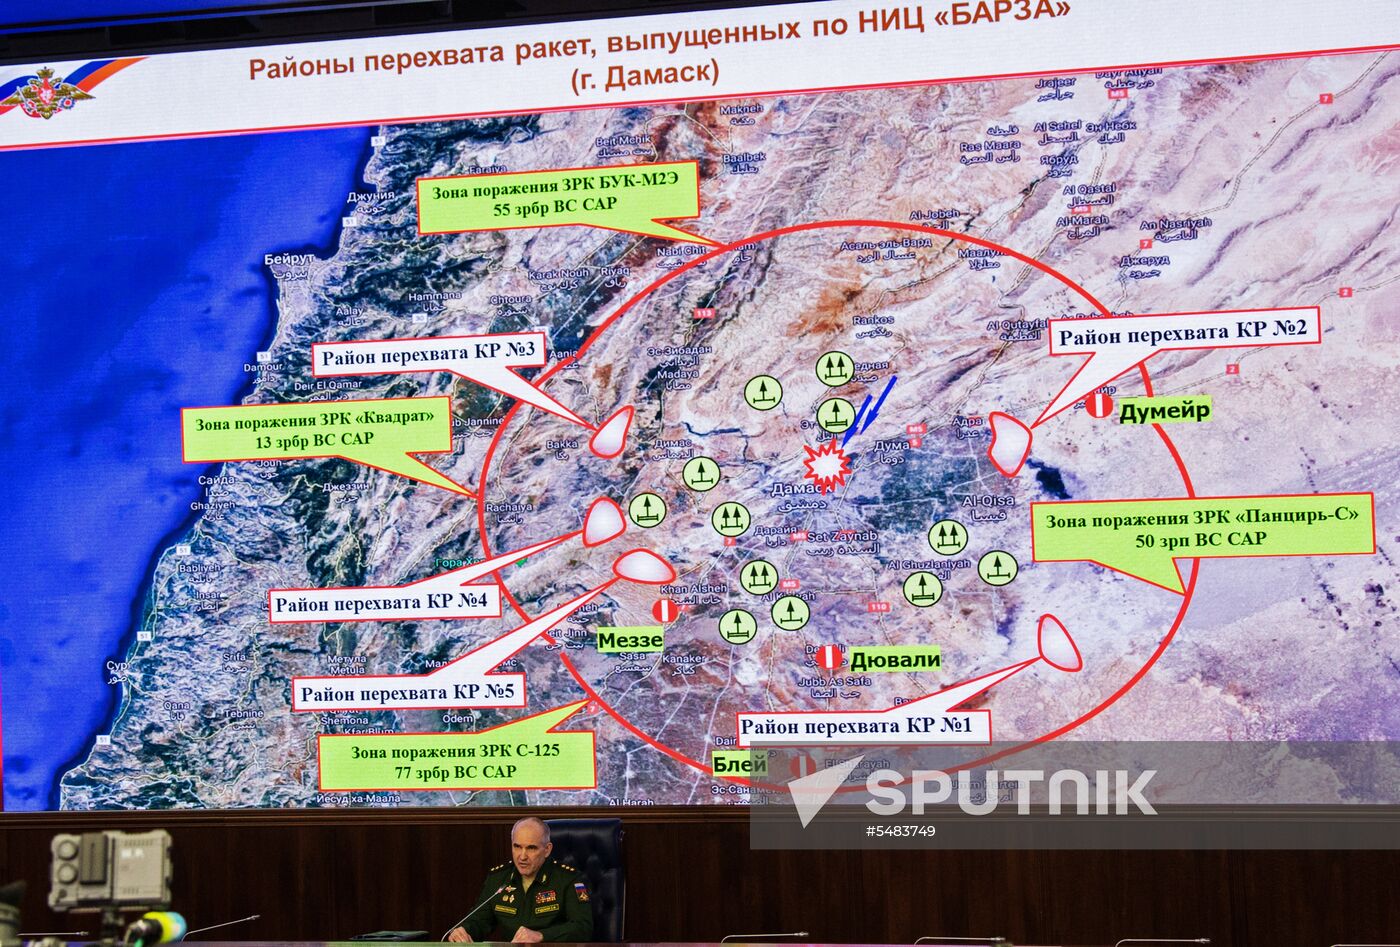 Sergei Rudskoi's briefing on developments in Syria